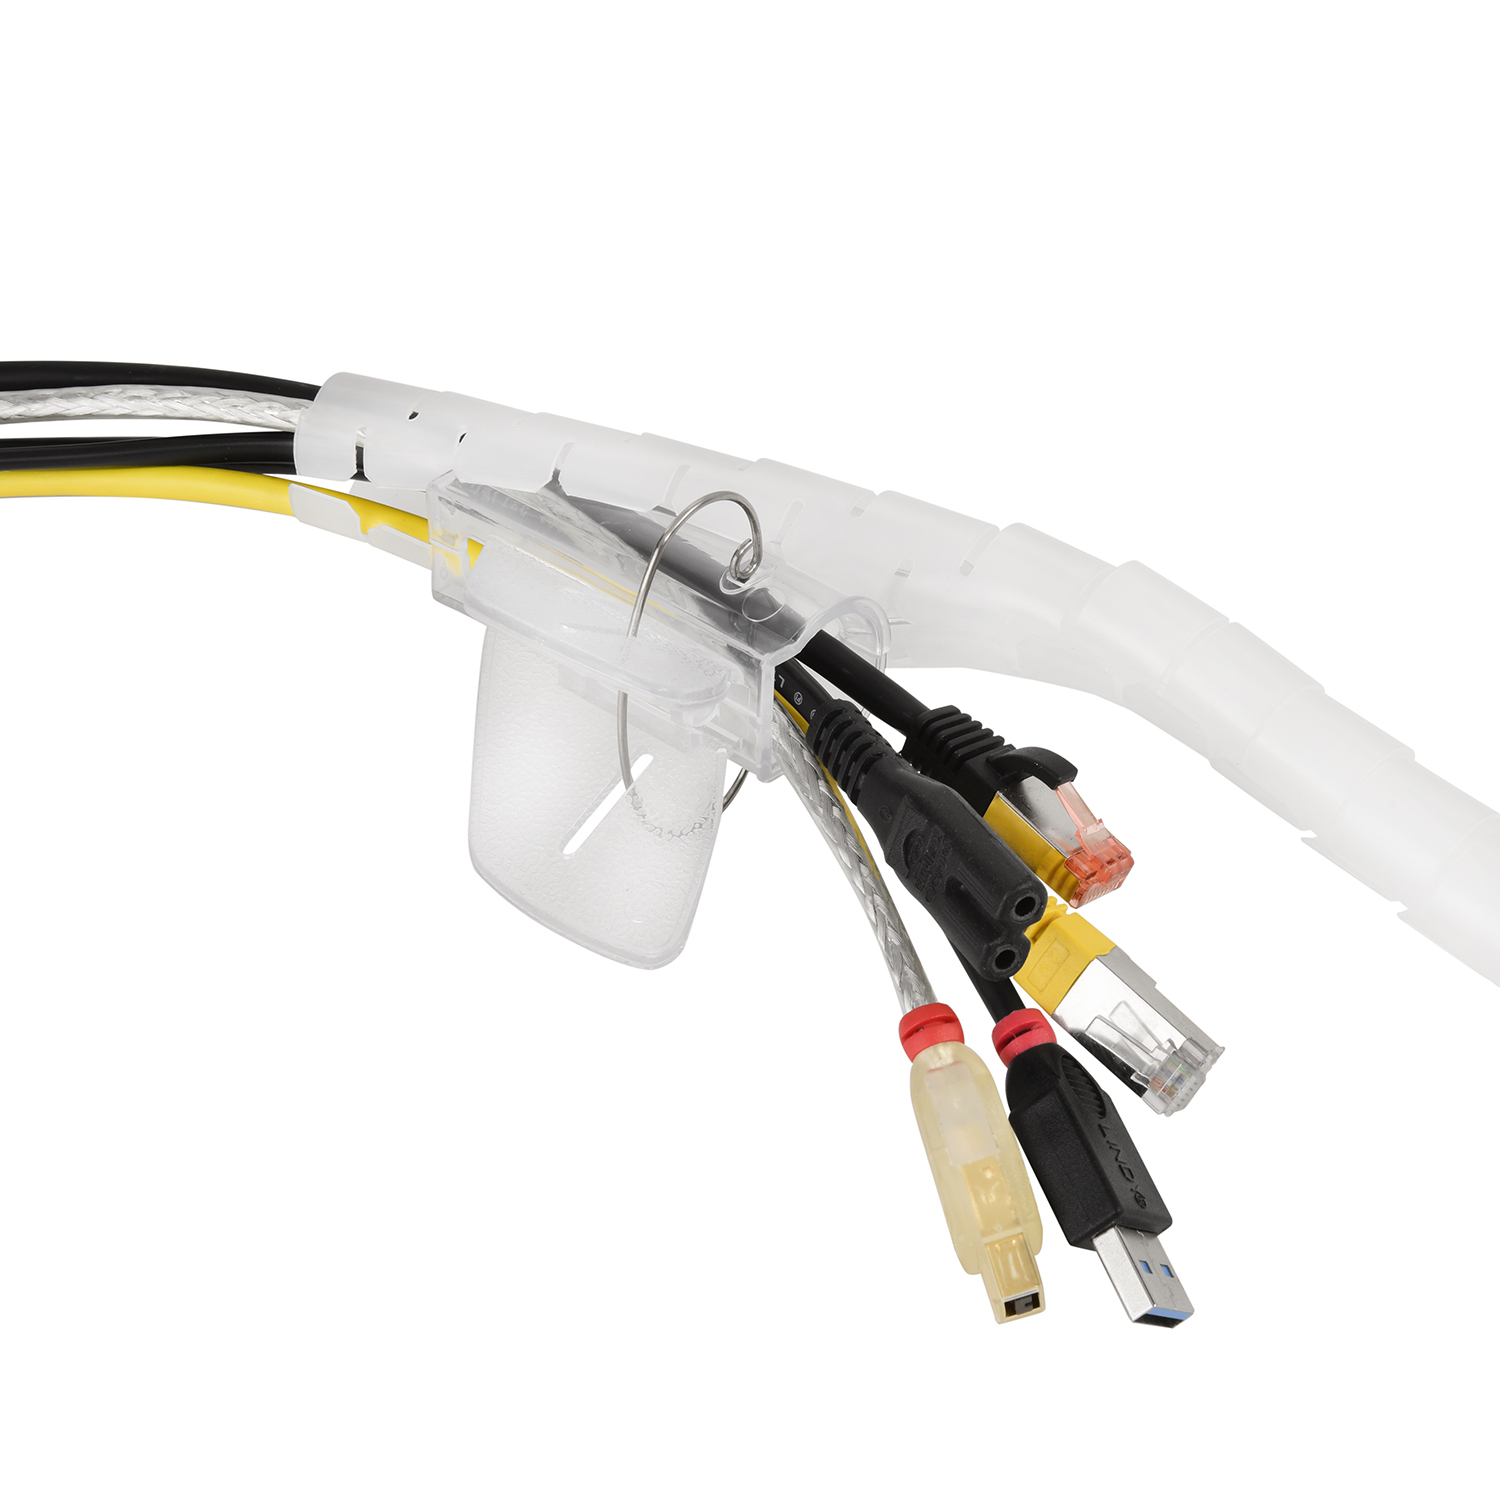 Einfädelhilfe, 1,5m Kabelschlauch, Transparent, mit Spiral-Kabelschlauch TPFNET Transparent Premium 20mm,